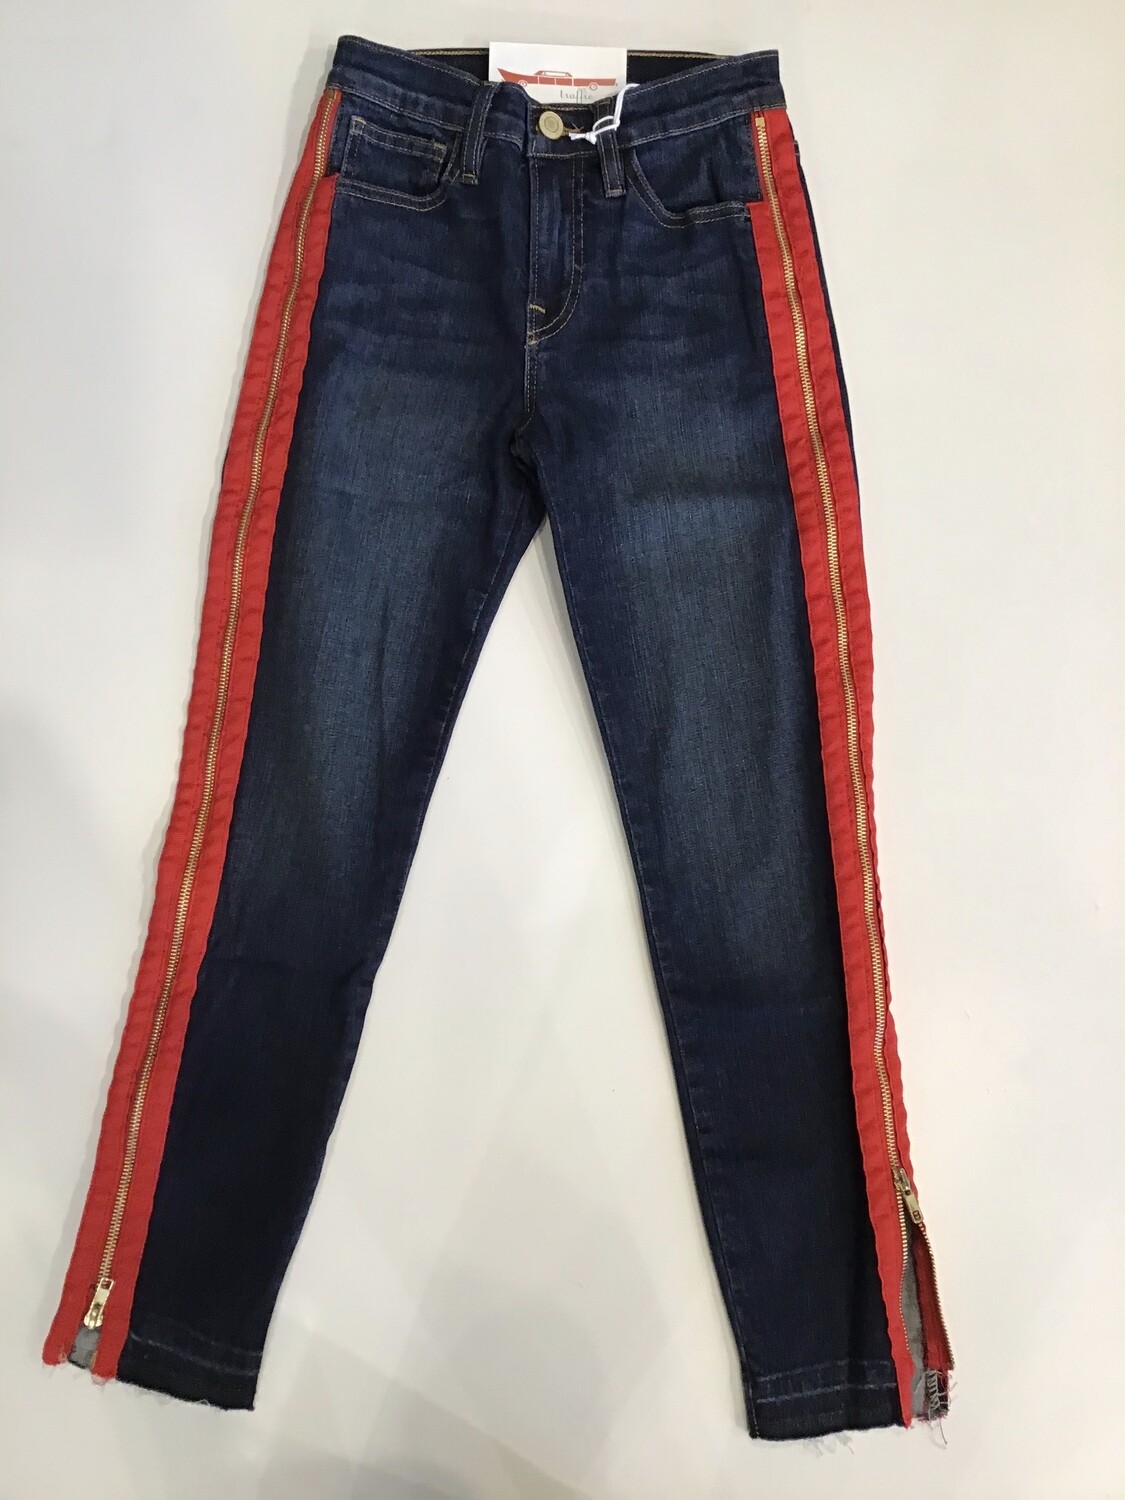 Full side zipper skinny jean